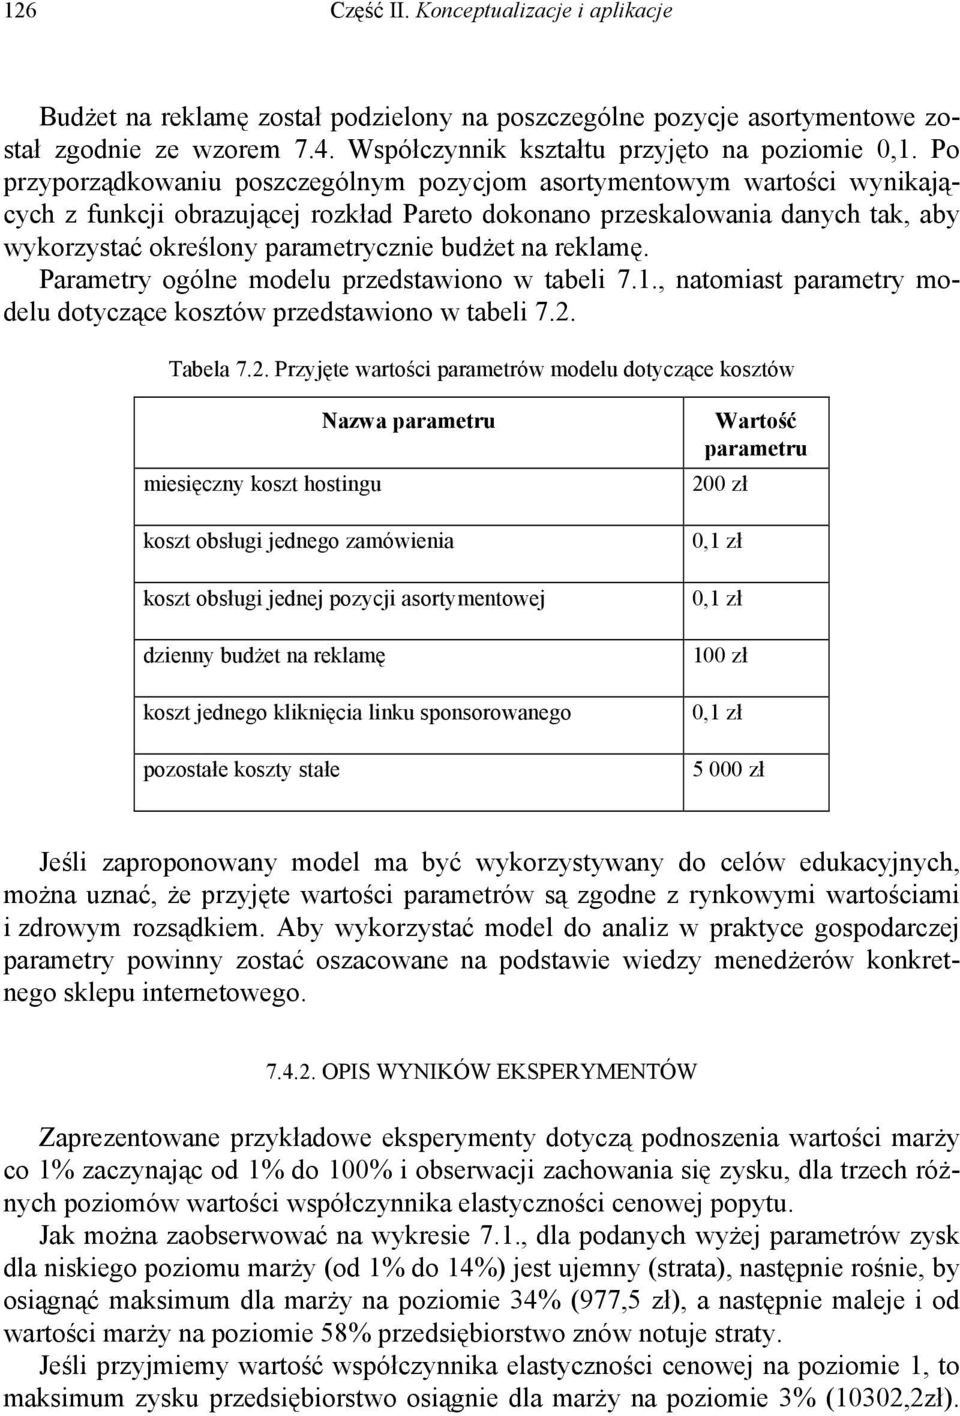 budżet na reklamę. Parametry ogólne modelu przedstawiono w tabeli 7.1., natomiast parametry modelu dotyczące kosztów przedstawiono w tabeli 7.2.